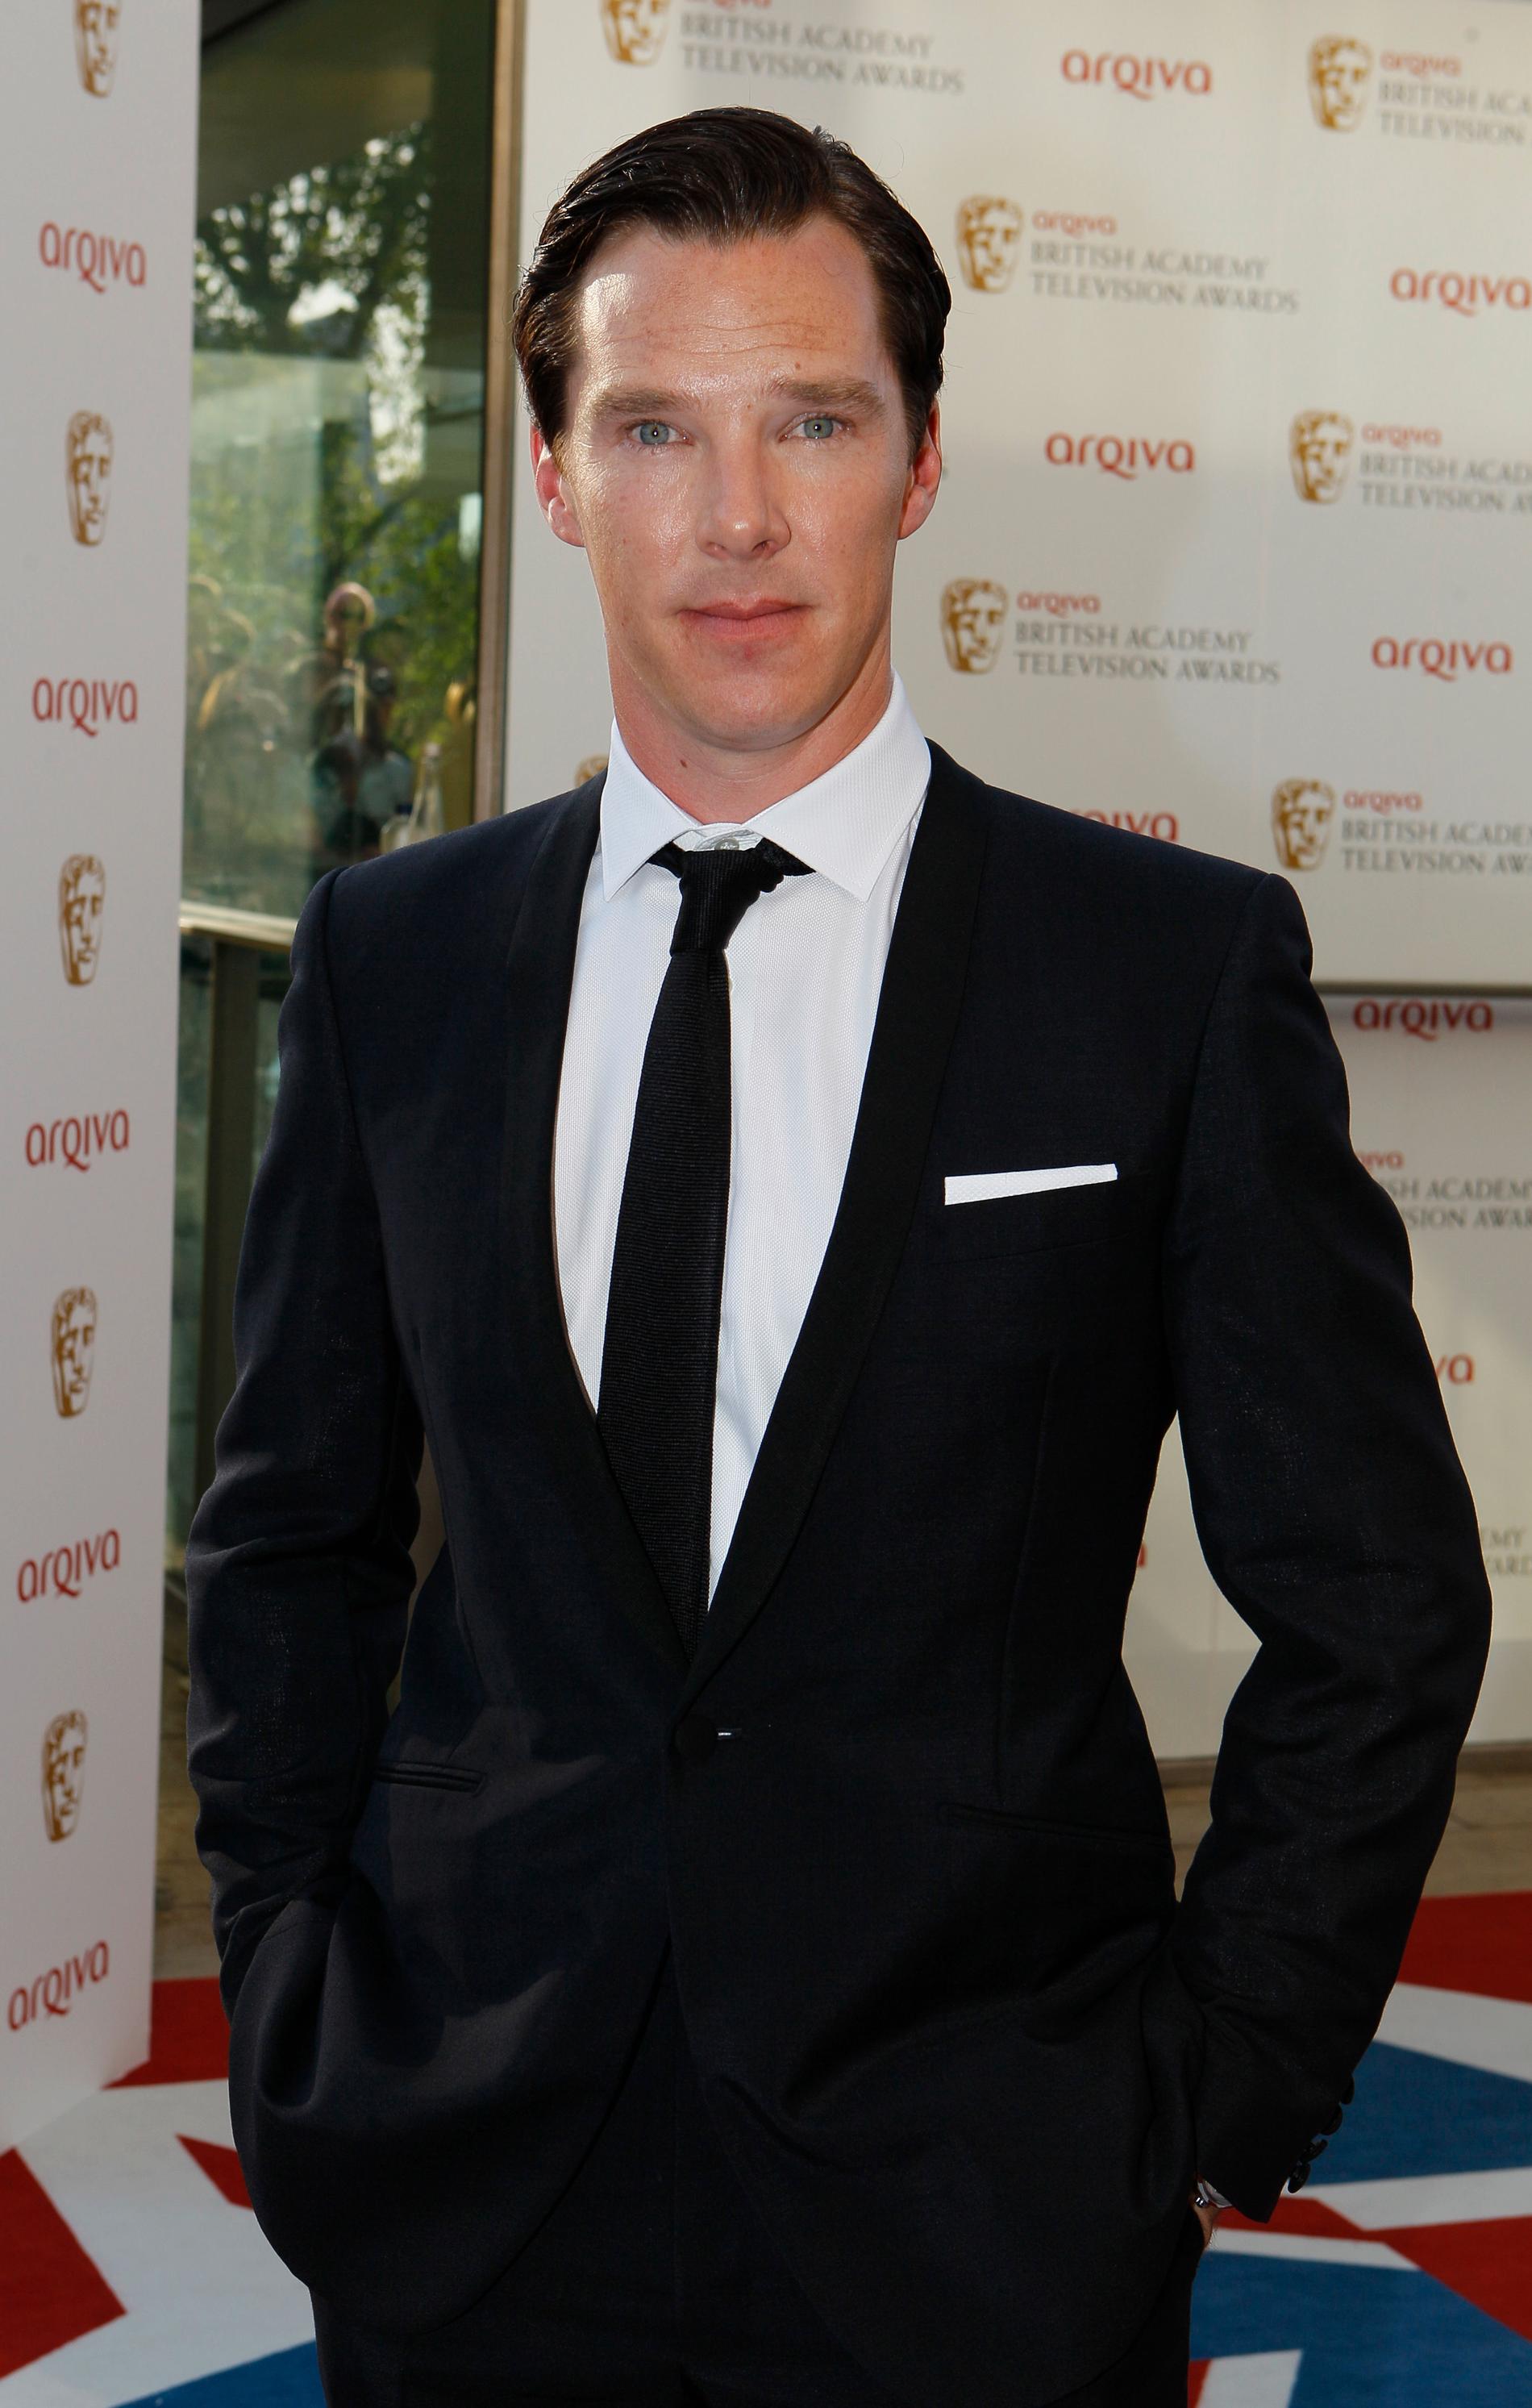 ... och det uppges vara Benedict Cumberbatch.